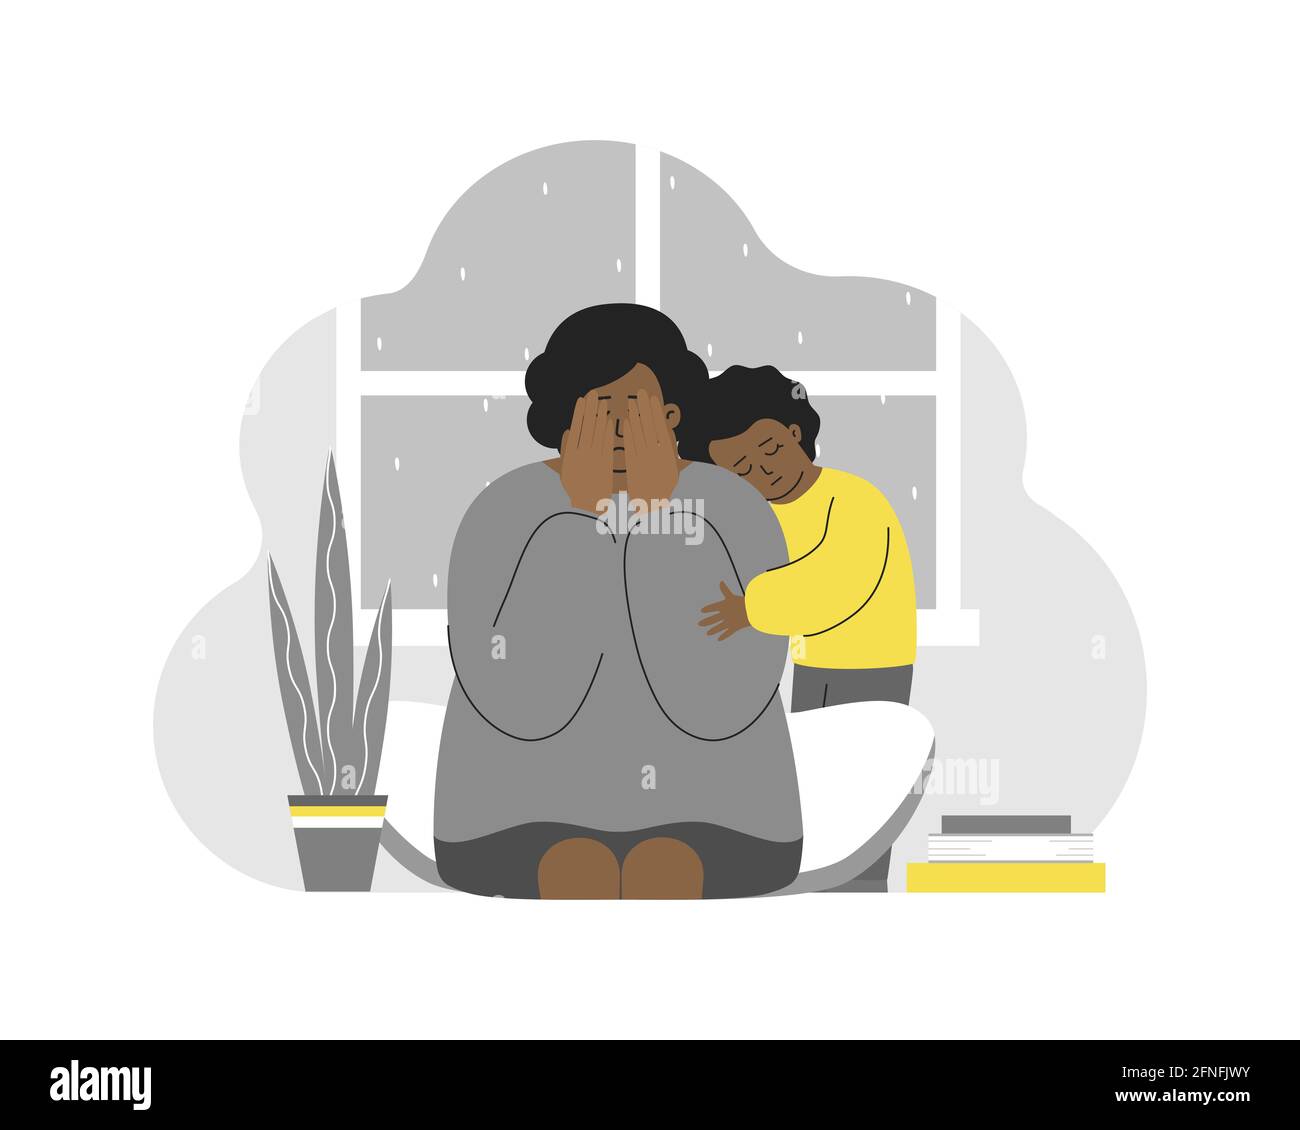 Illustrazione vettoriale con donna stanca piangente. Ragazza afro-americana abbraccia la mamma. Depressione postpartum, scurno emotivo, stress. La figlia si sente per la falena Illustrazione Vettoriale